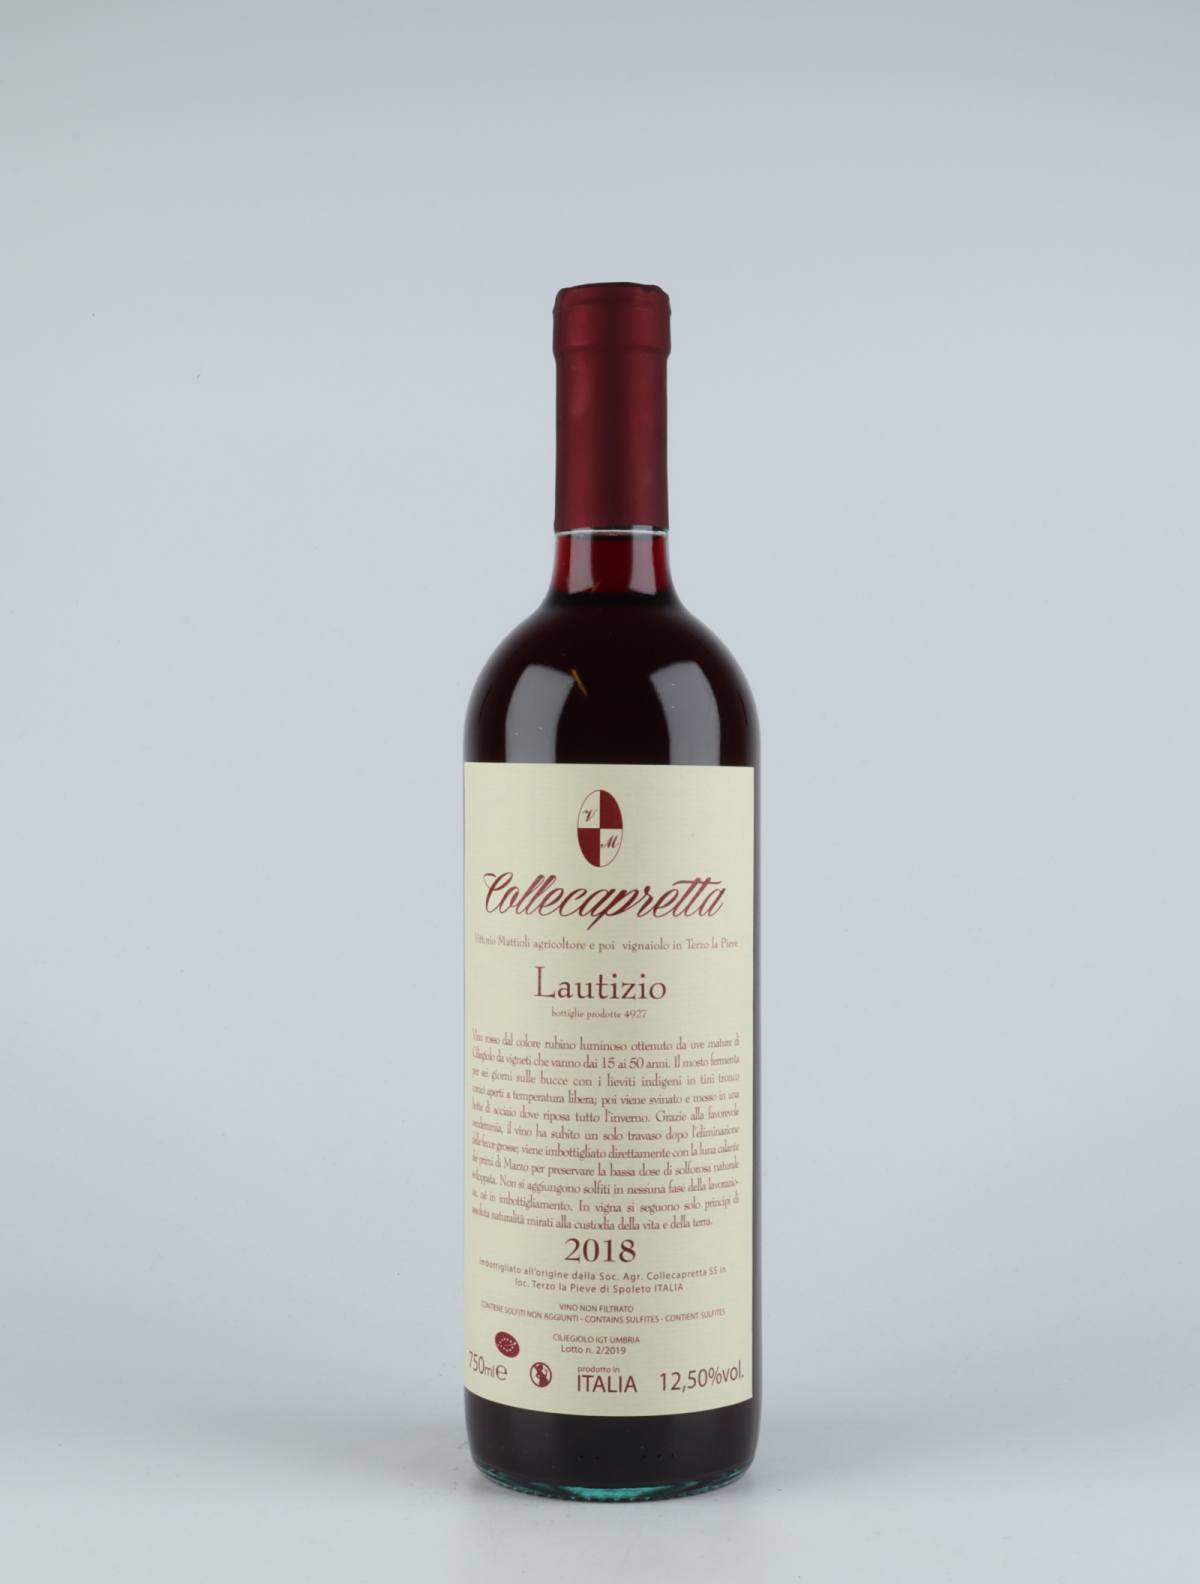 A bottle 2018 Lautizio Red wine from Collecapretta, Umbria in Italy